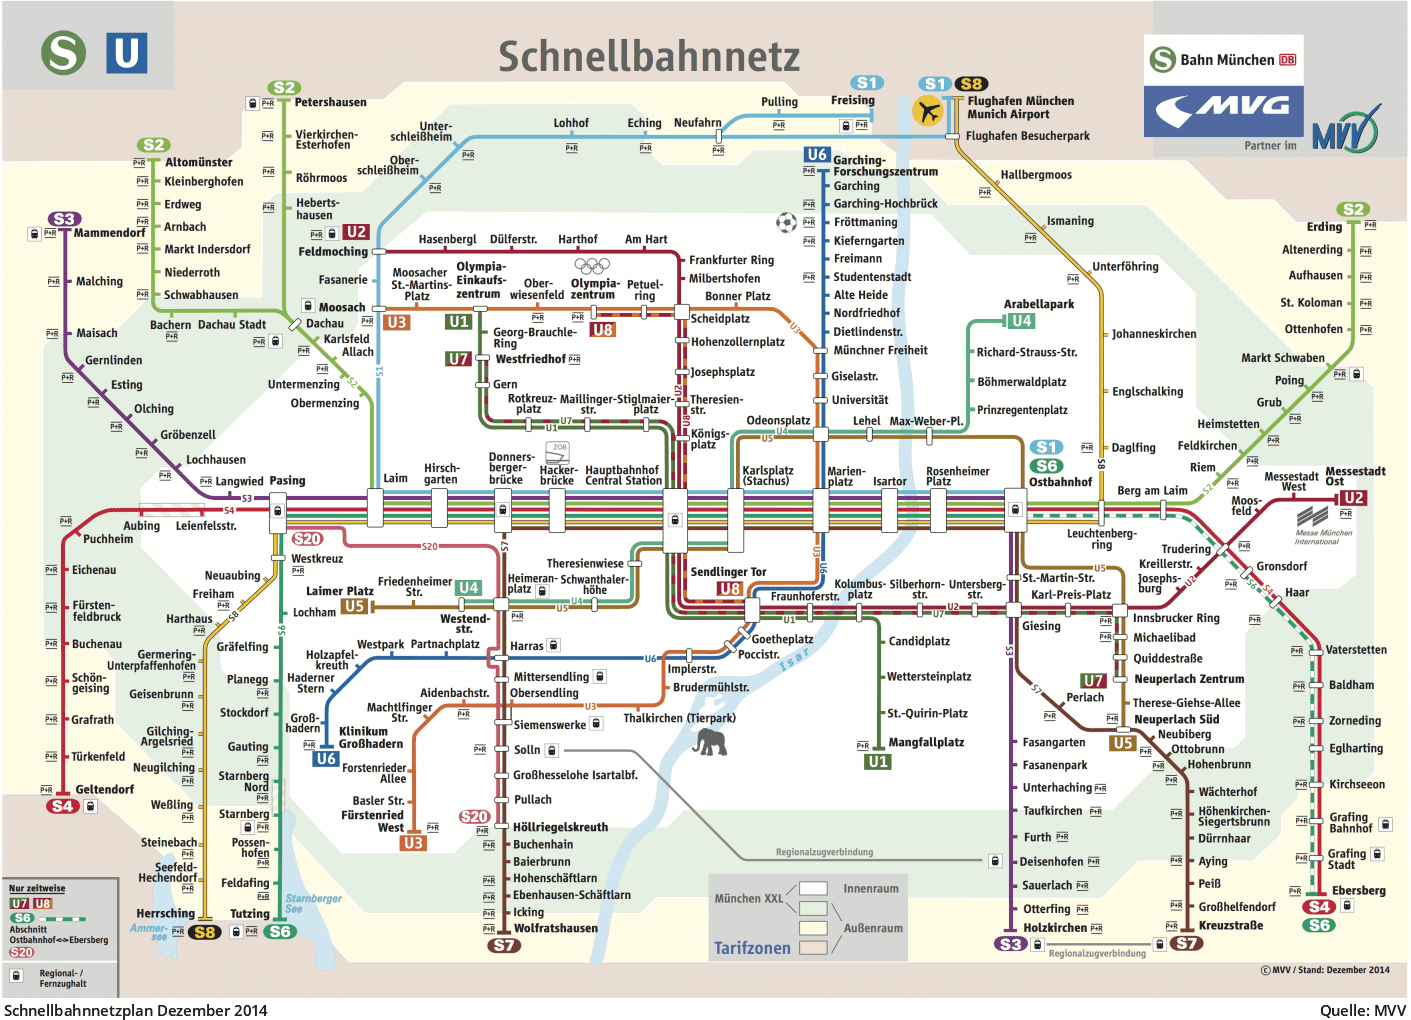 Pläne des MVV-Schnellbahnnetzes von 1972 bis heute - U-Bahn München.